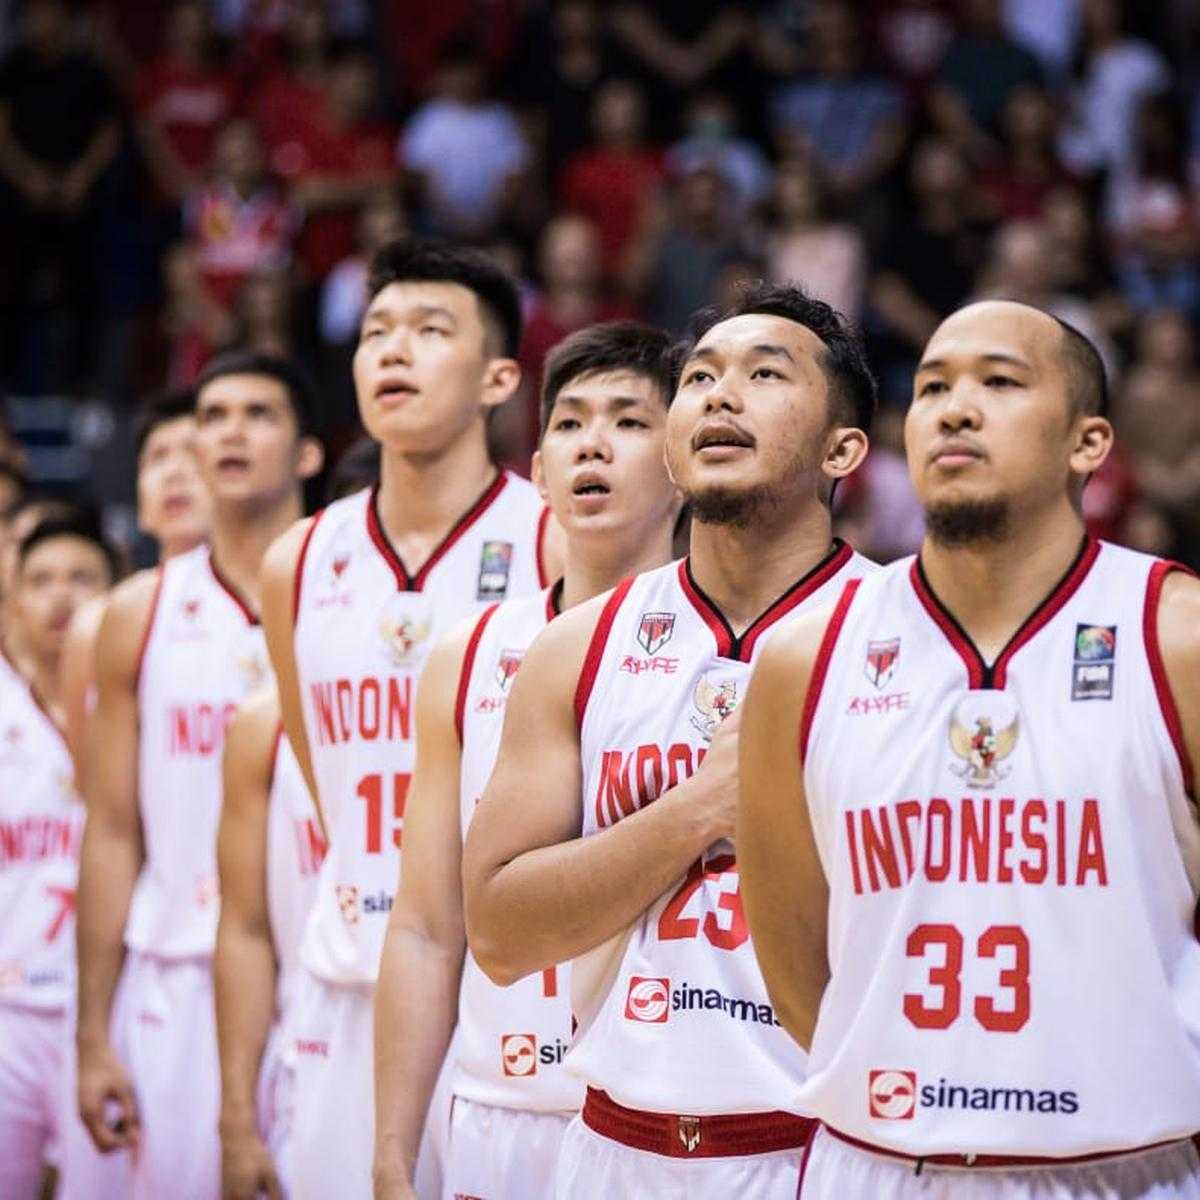 Hanya Jadi Penonton, Dapatkah Piala Dunia FIBA Momentum Kebangkitan Basket Indonesia?